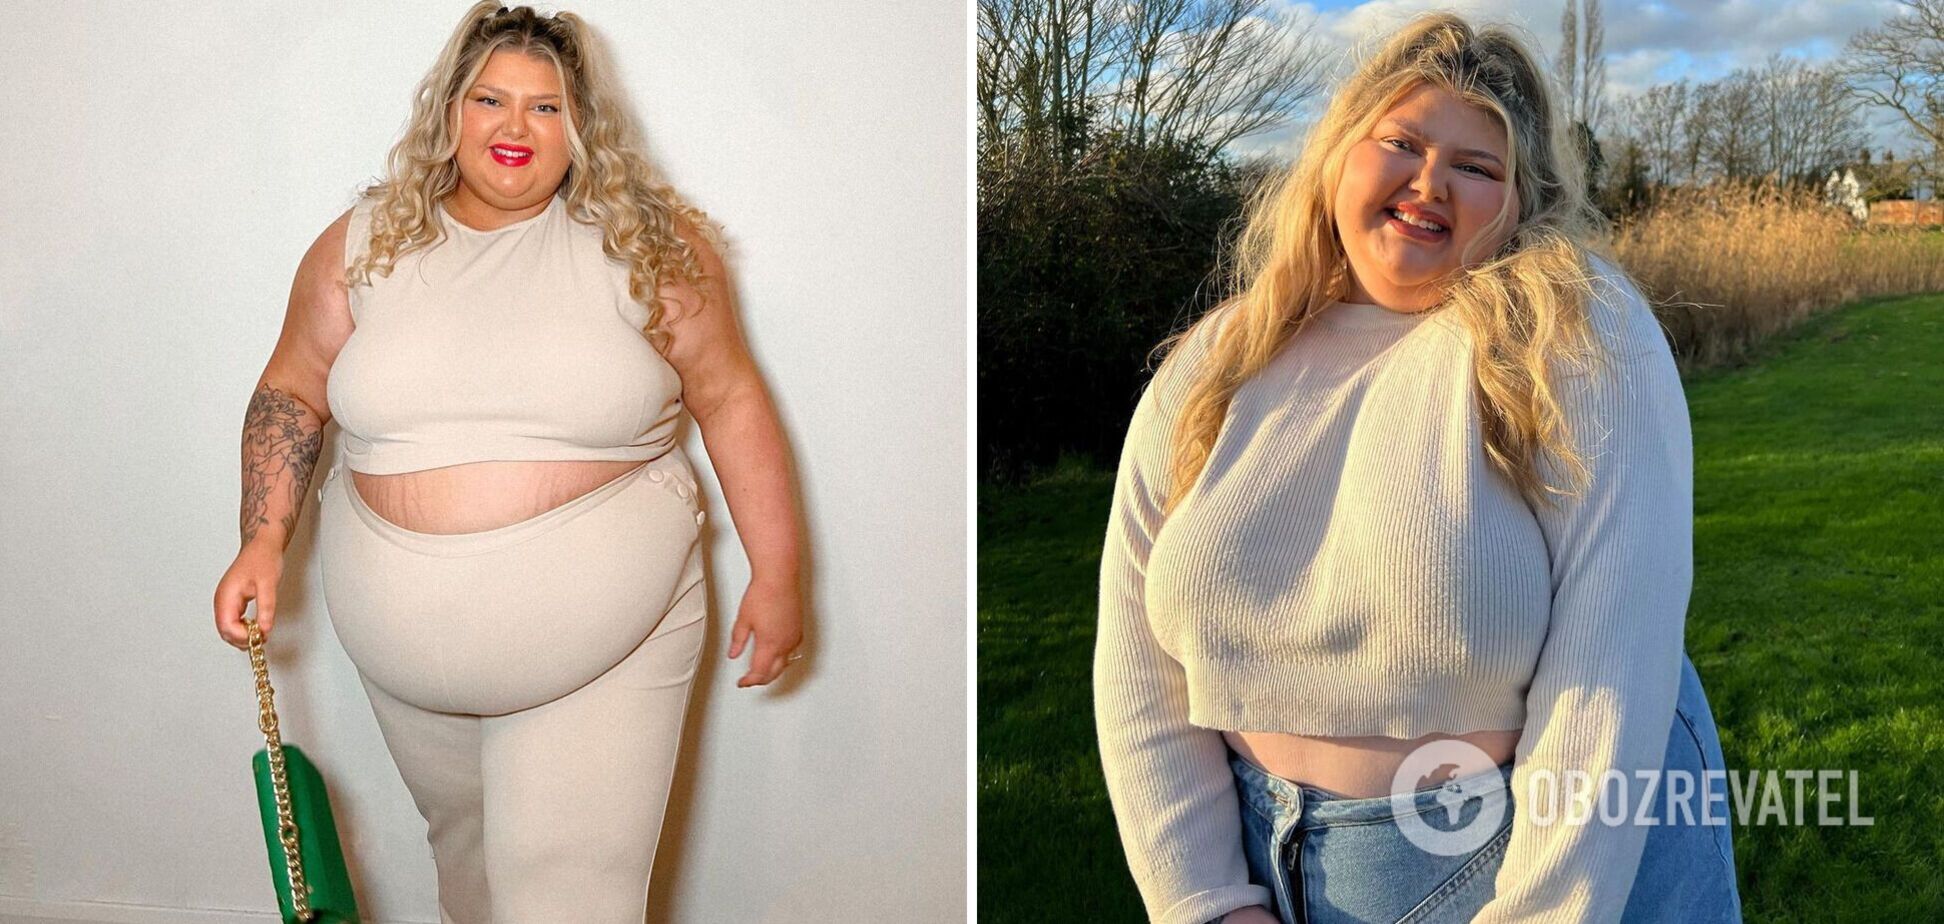 22-річна 'Барбі великого розміру' кинула виклик хейтерам фото у відвертому одязі